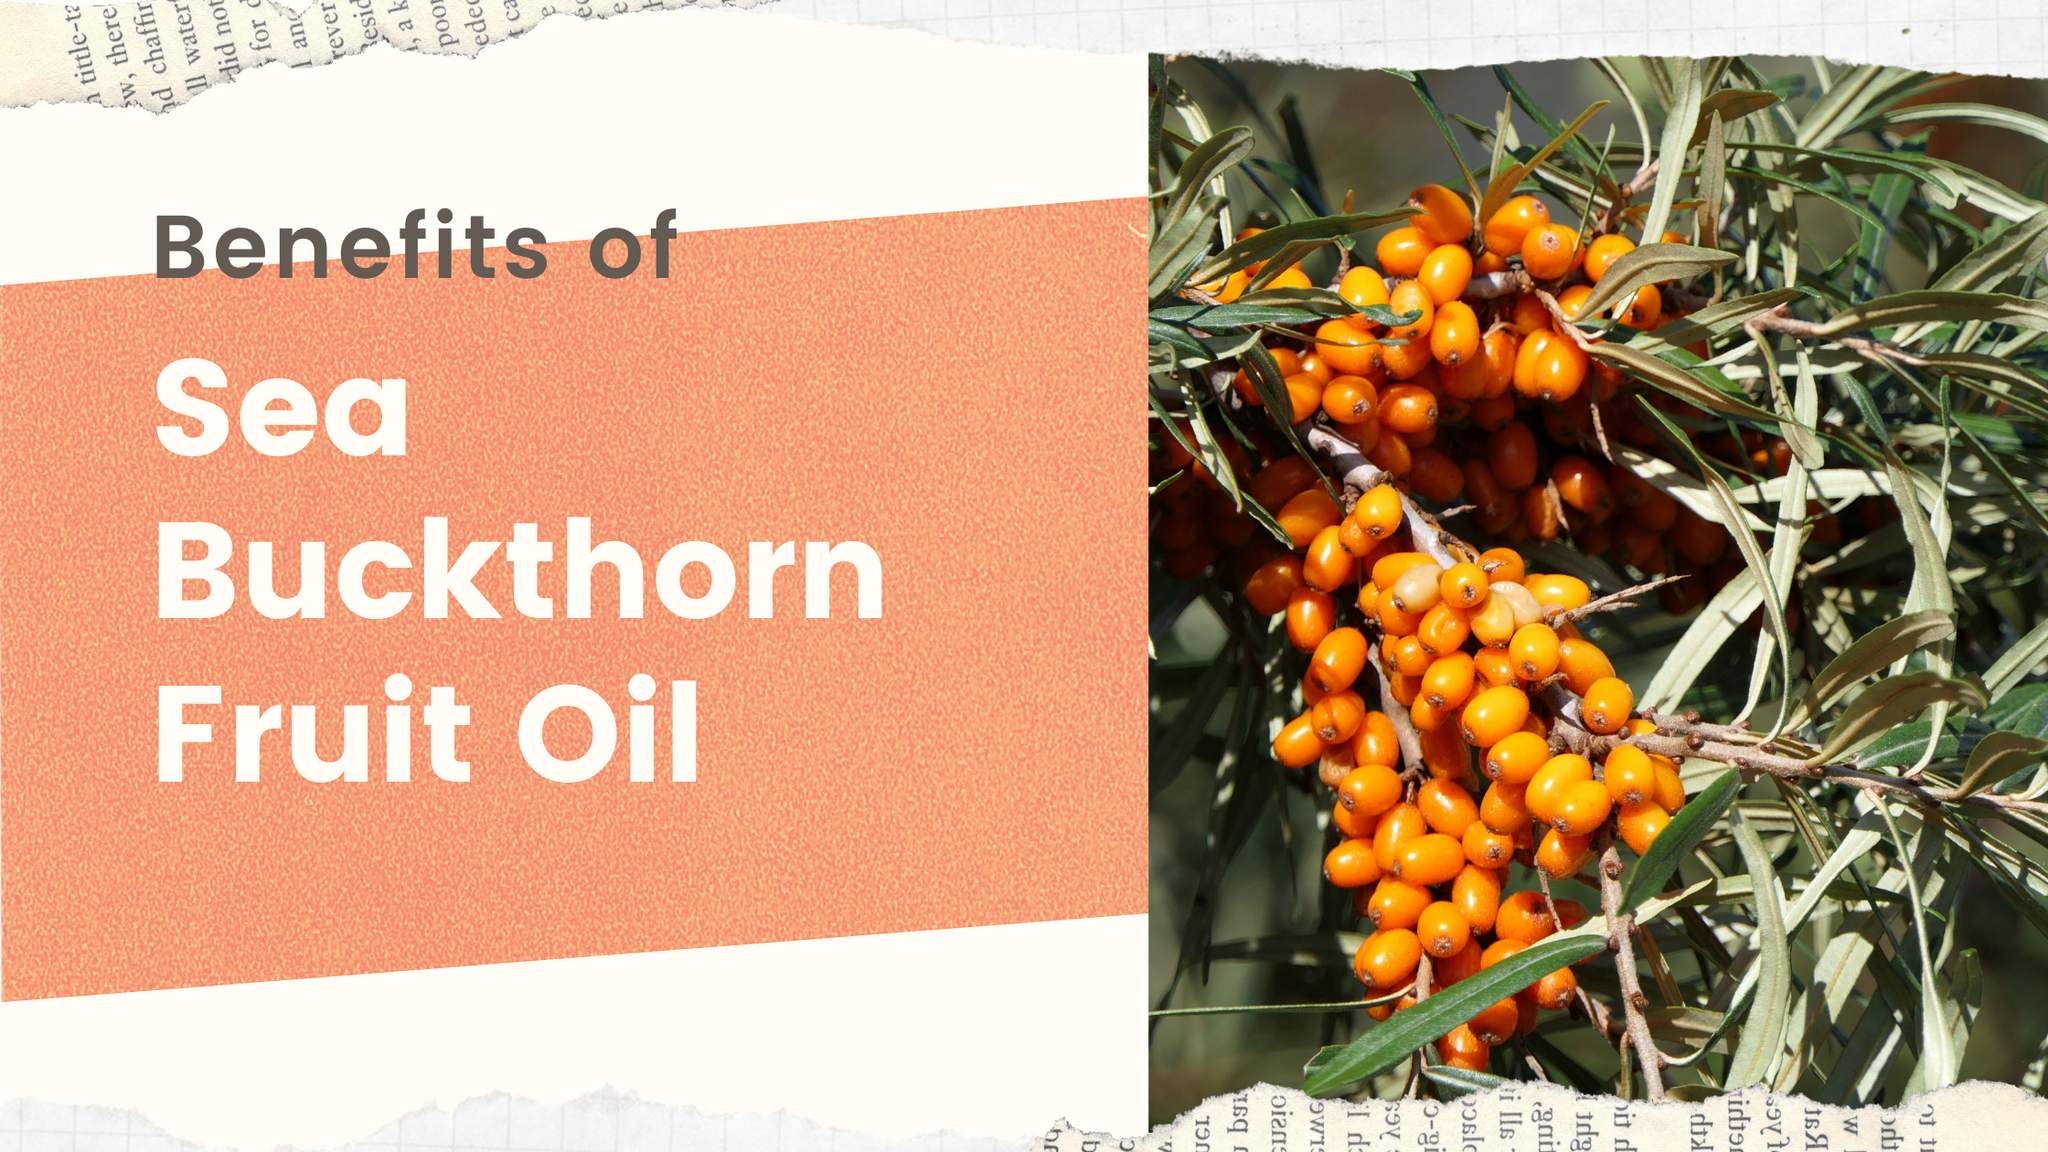 Benefits of Sea Buckthorn Fruit Oil